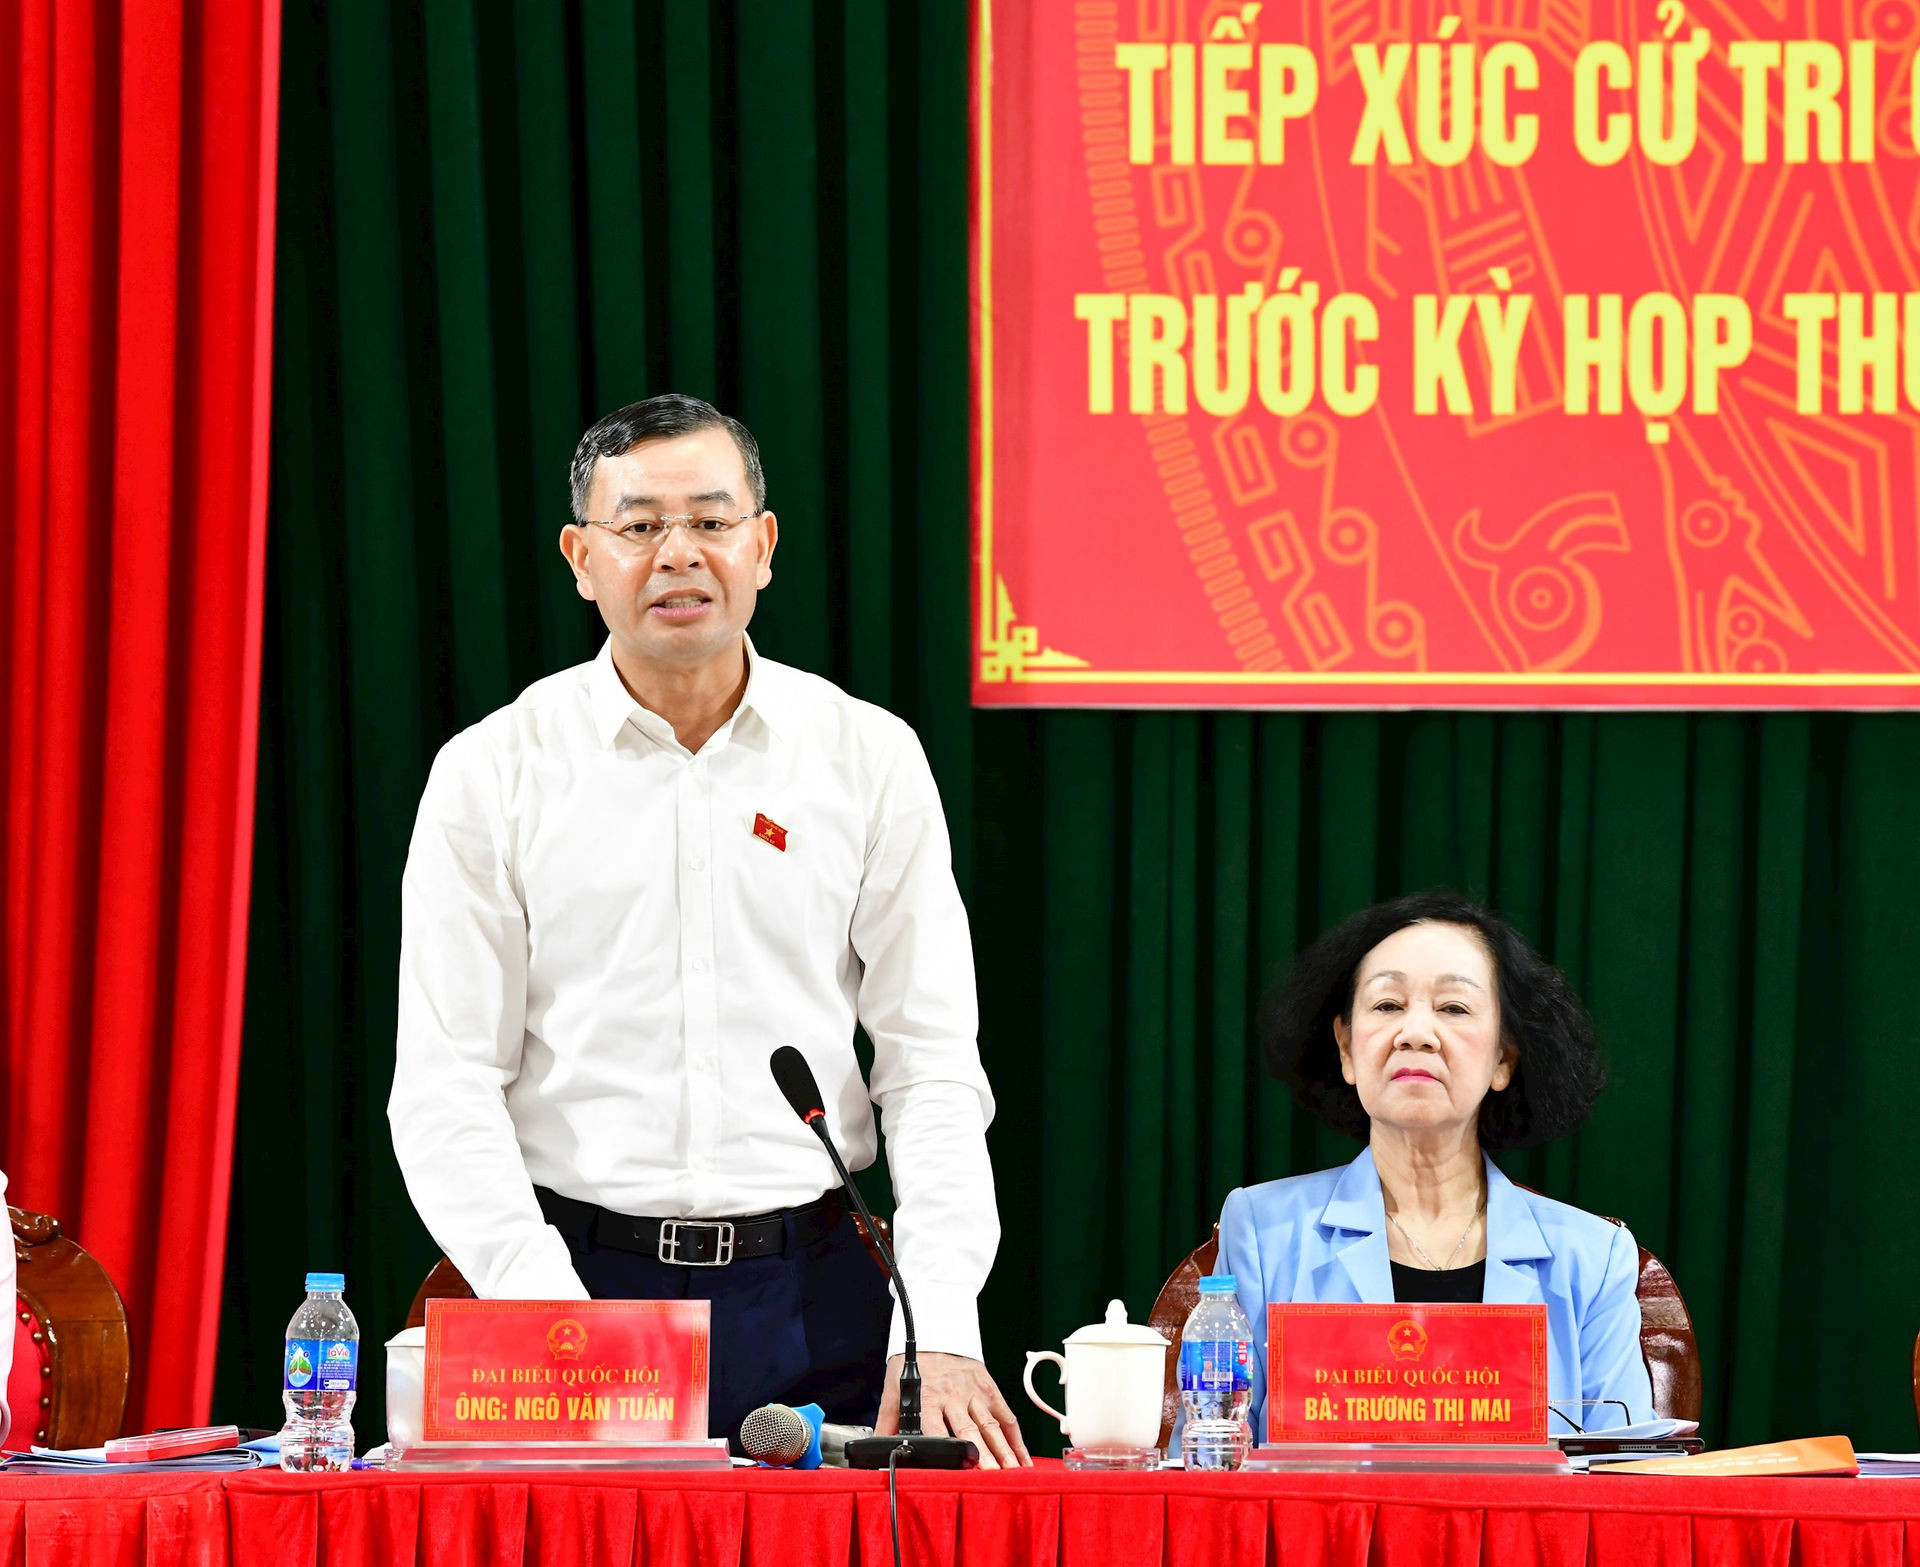 Tổng Kiểm toán nhà nước Ngô Văn Tuấn thay mặt Đoàn ĐBQH tỉnh điều hành trao đổi ý kiến với cử tri.